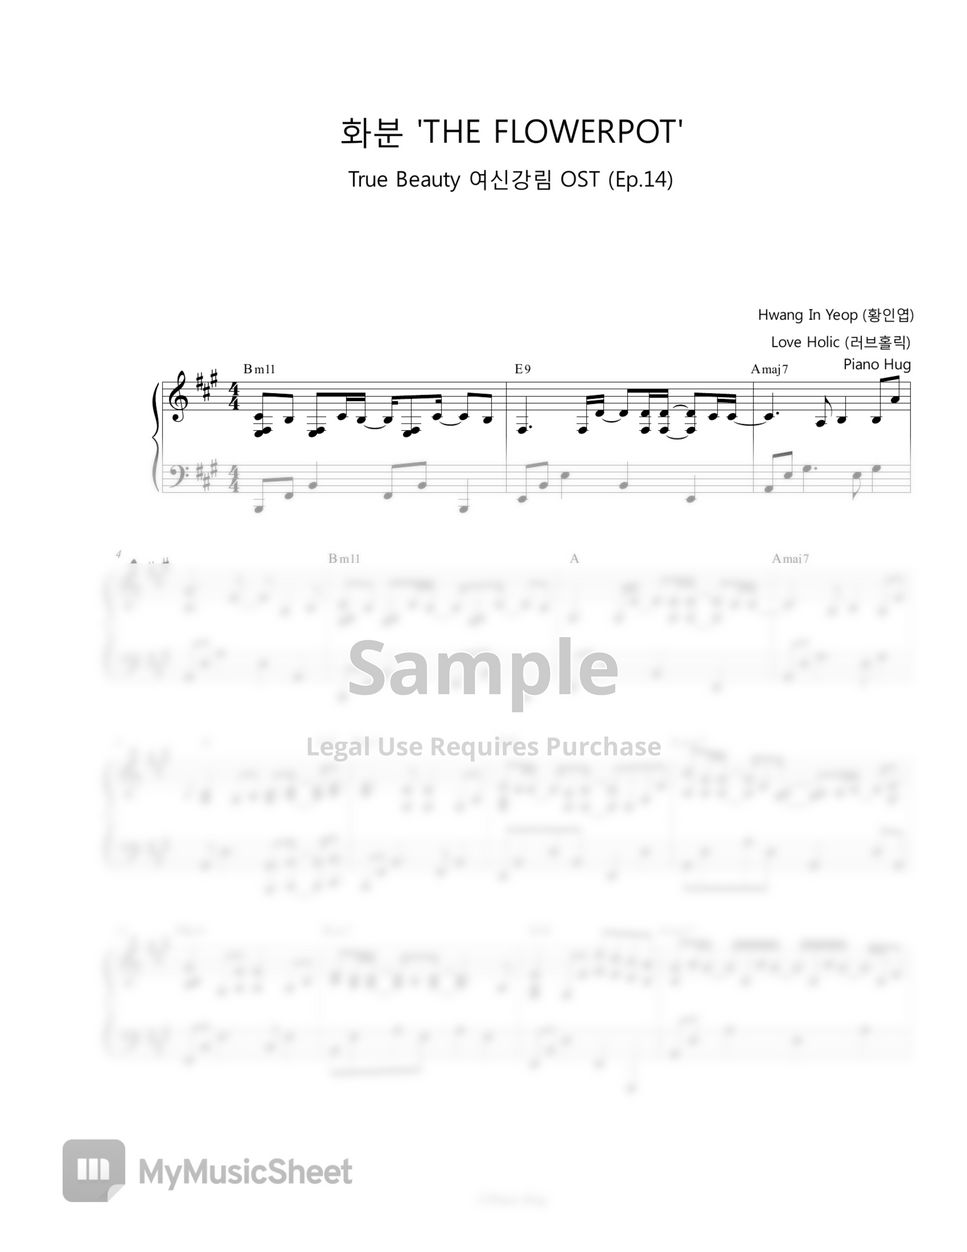 Hwanh In Yeop (황인엽) - Flowerpot '화분' (True Beauty OST) by Piano Hug